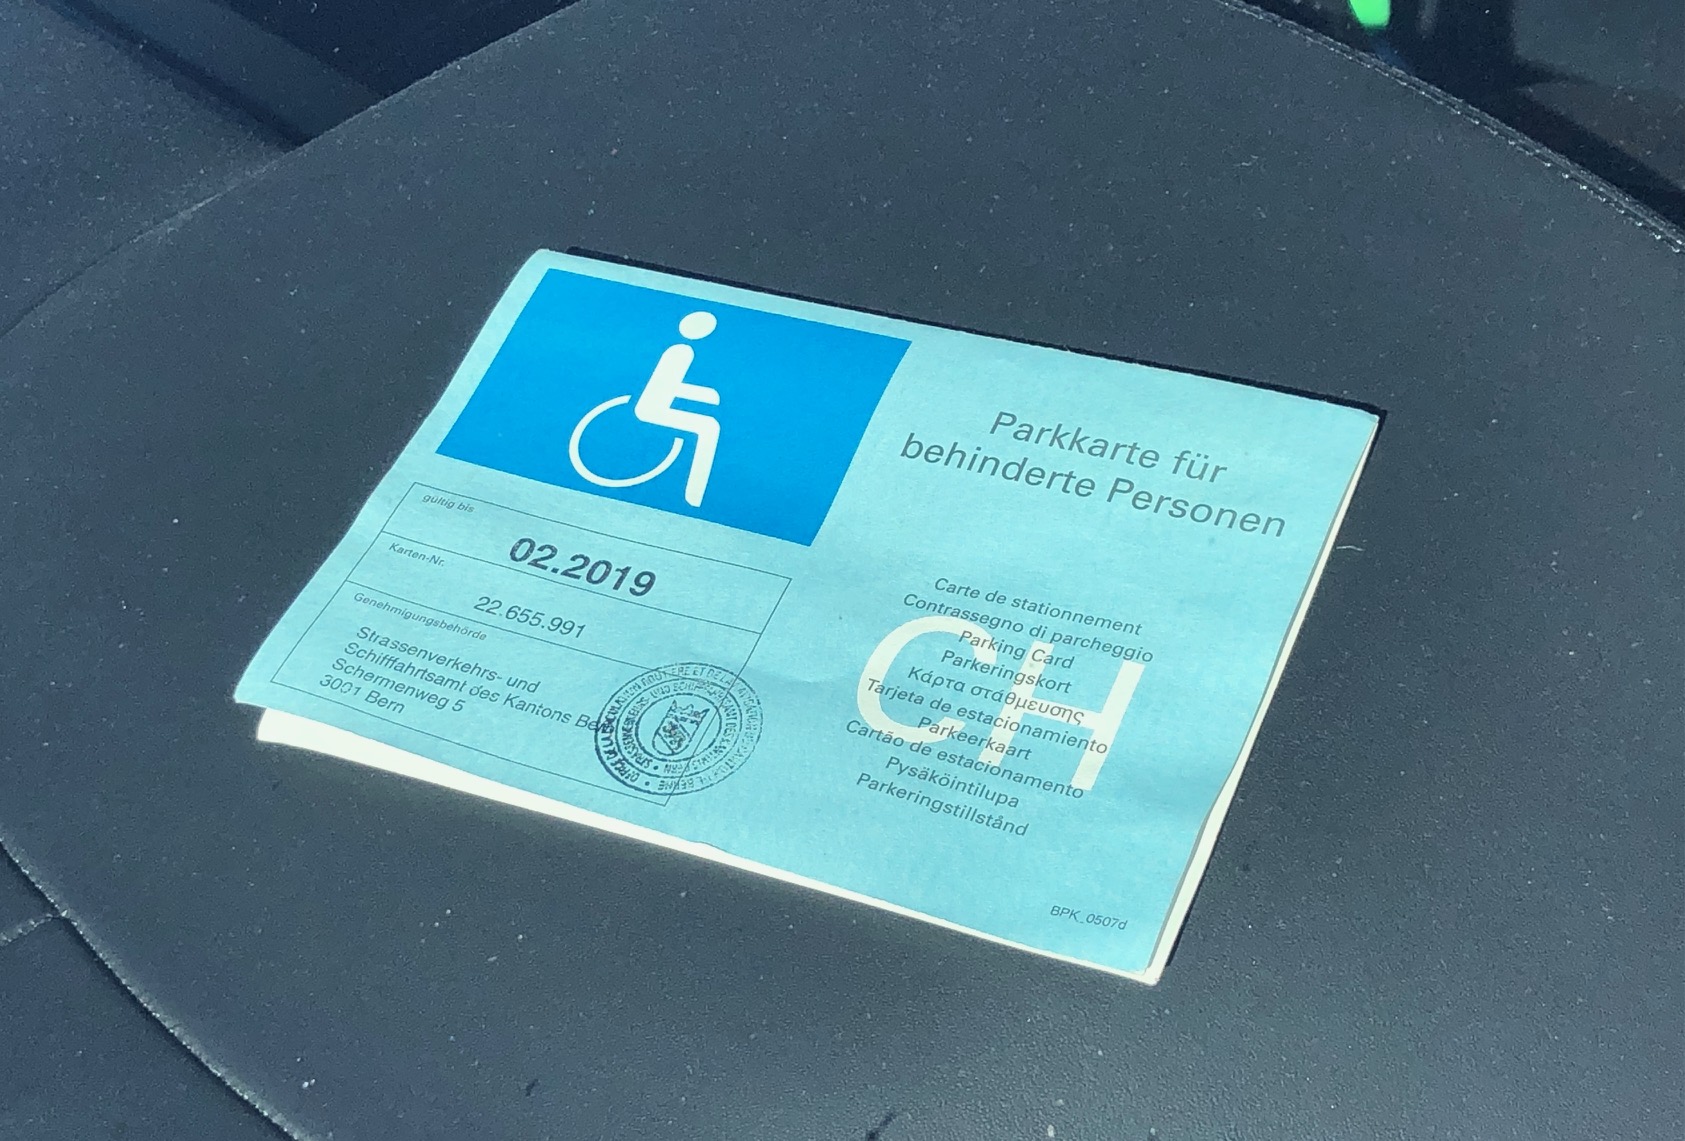 Parkplatz für Rollstuhlfahrer ✓ mi Kfz Kennzeichen geprägt